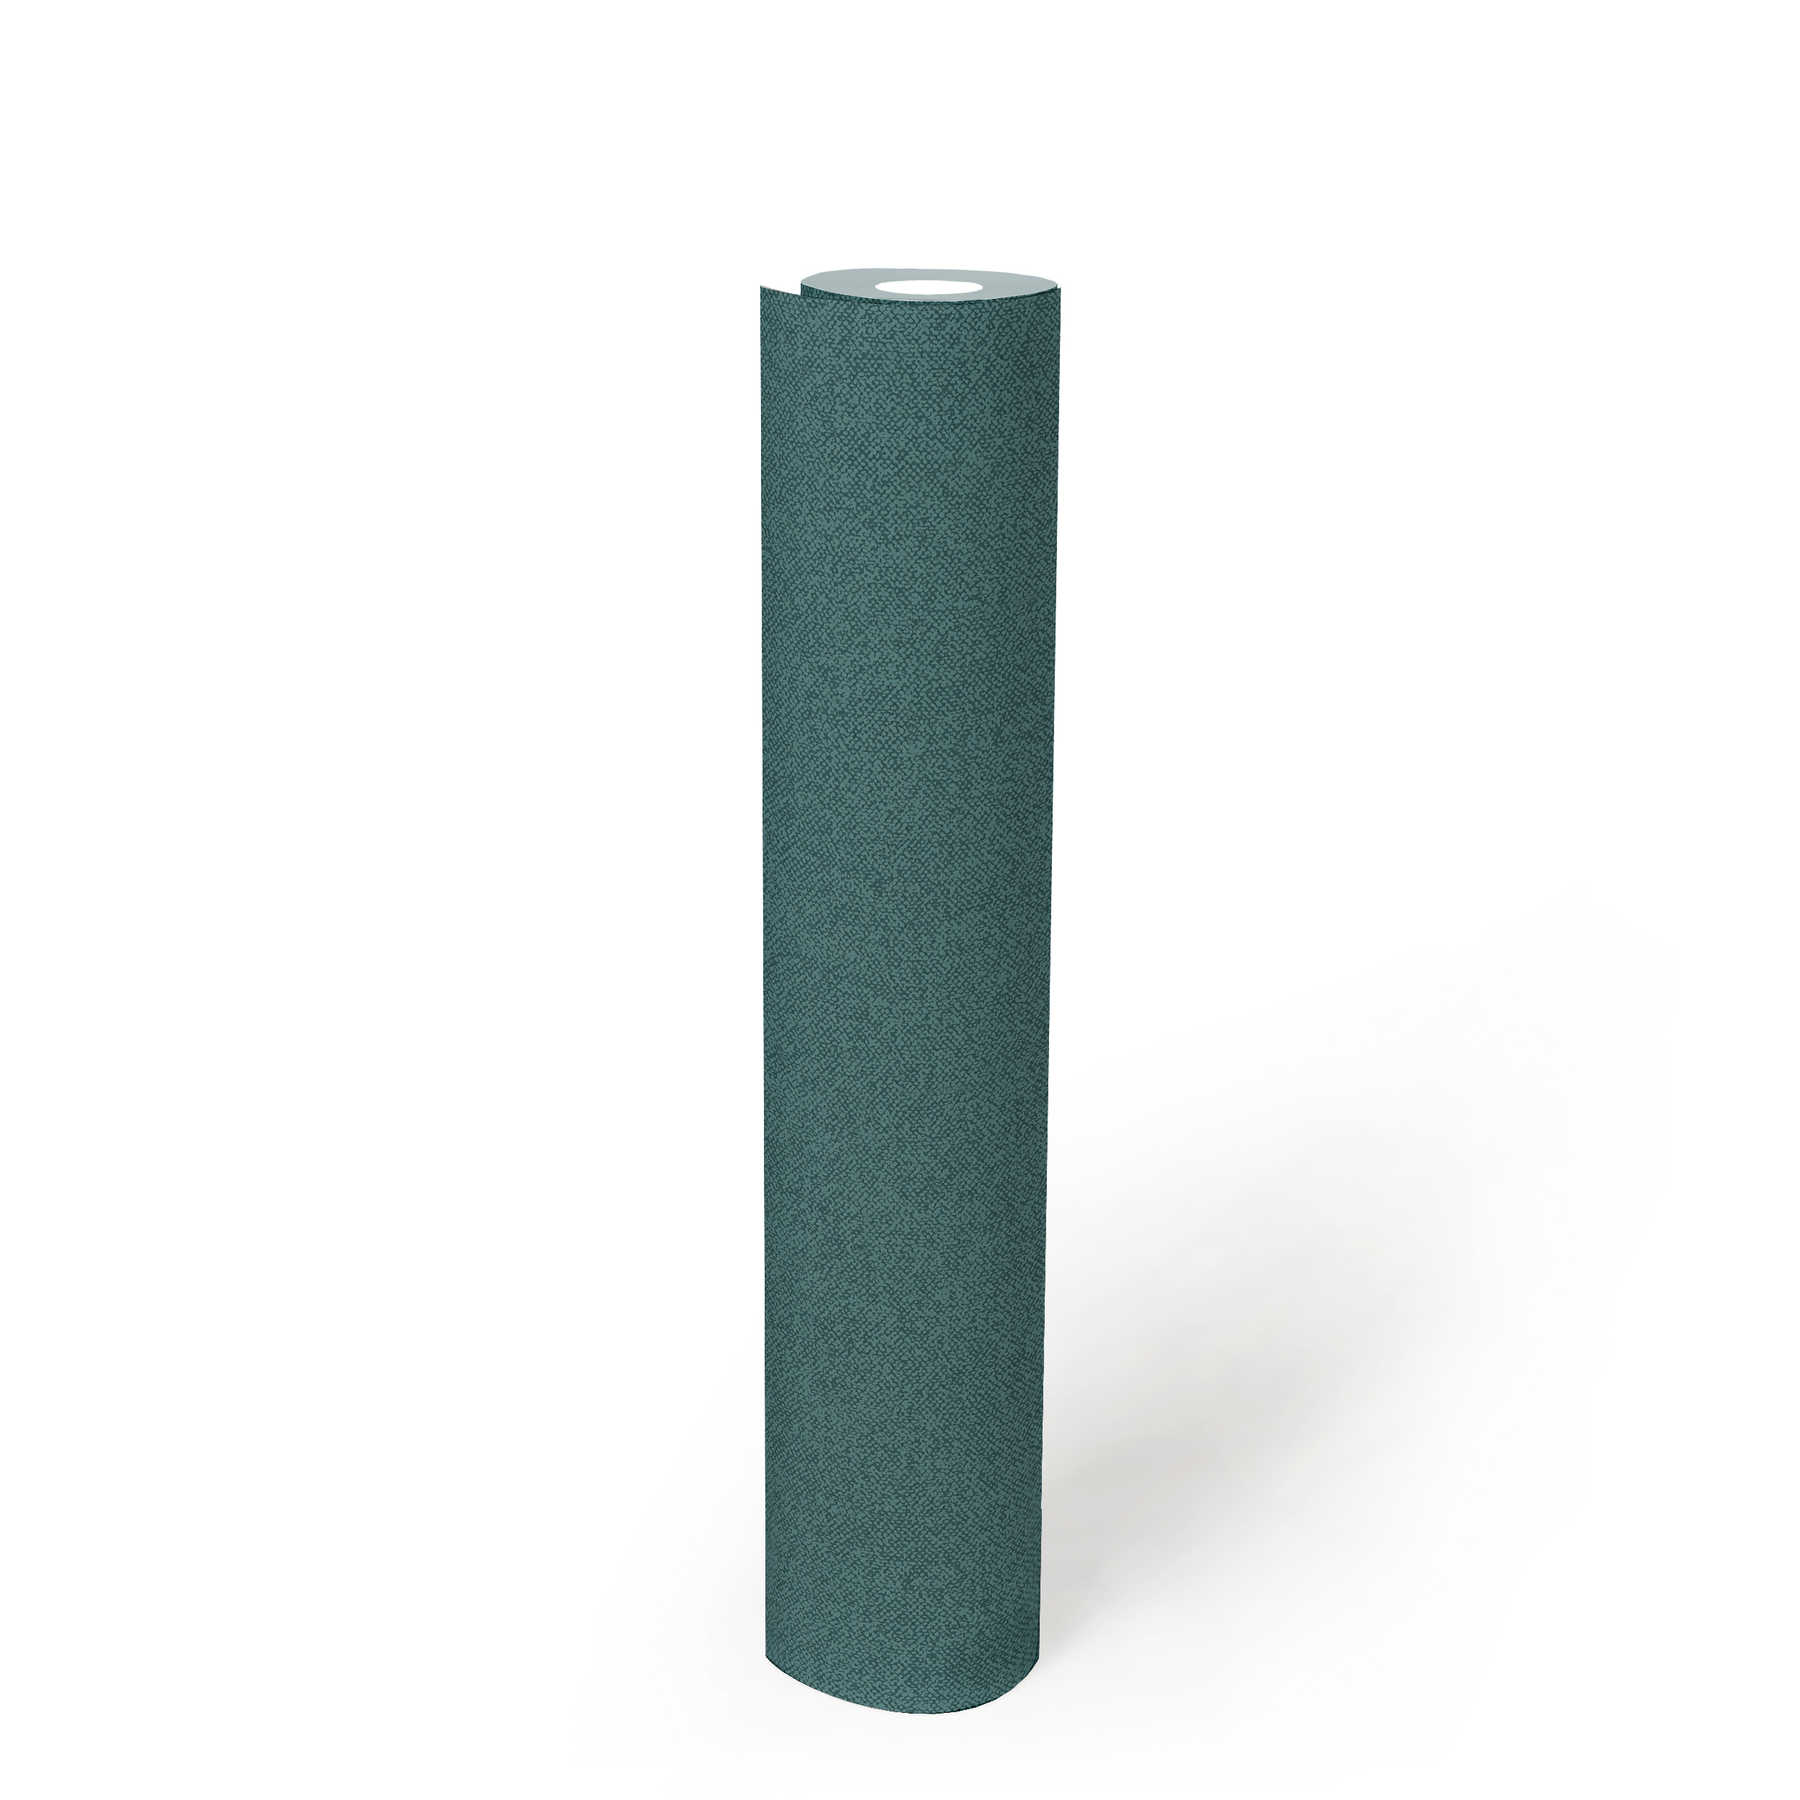             Papier peint uni aspect lin, structuré - vert, bleu
        